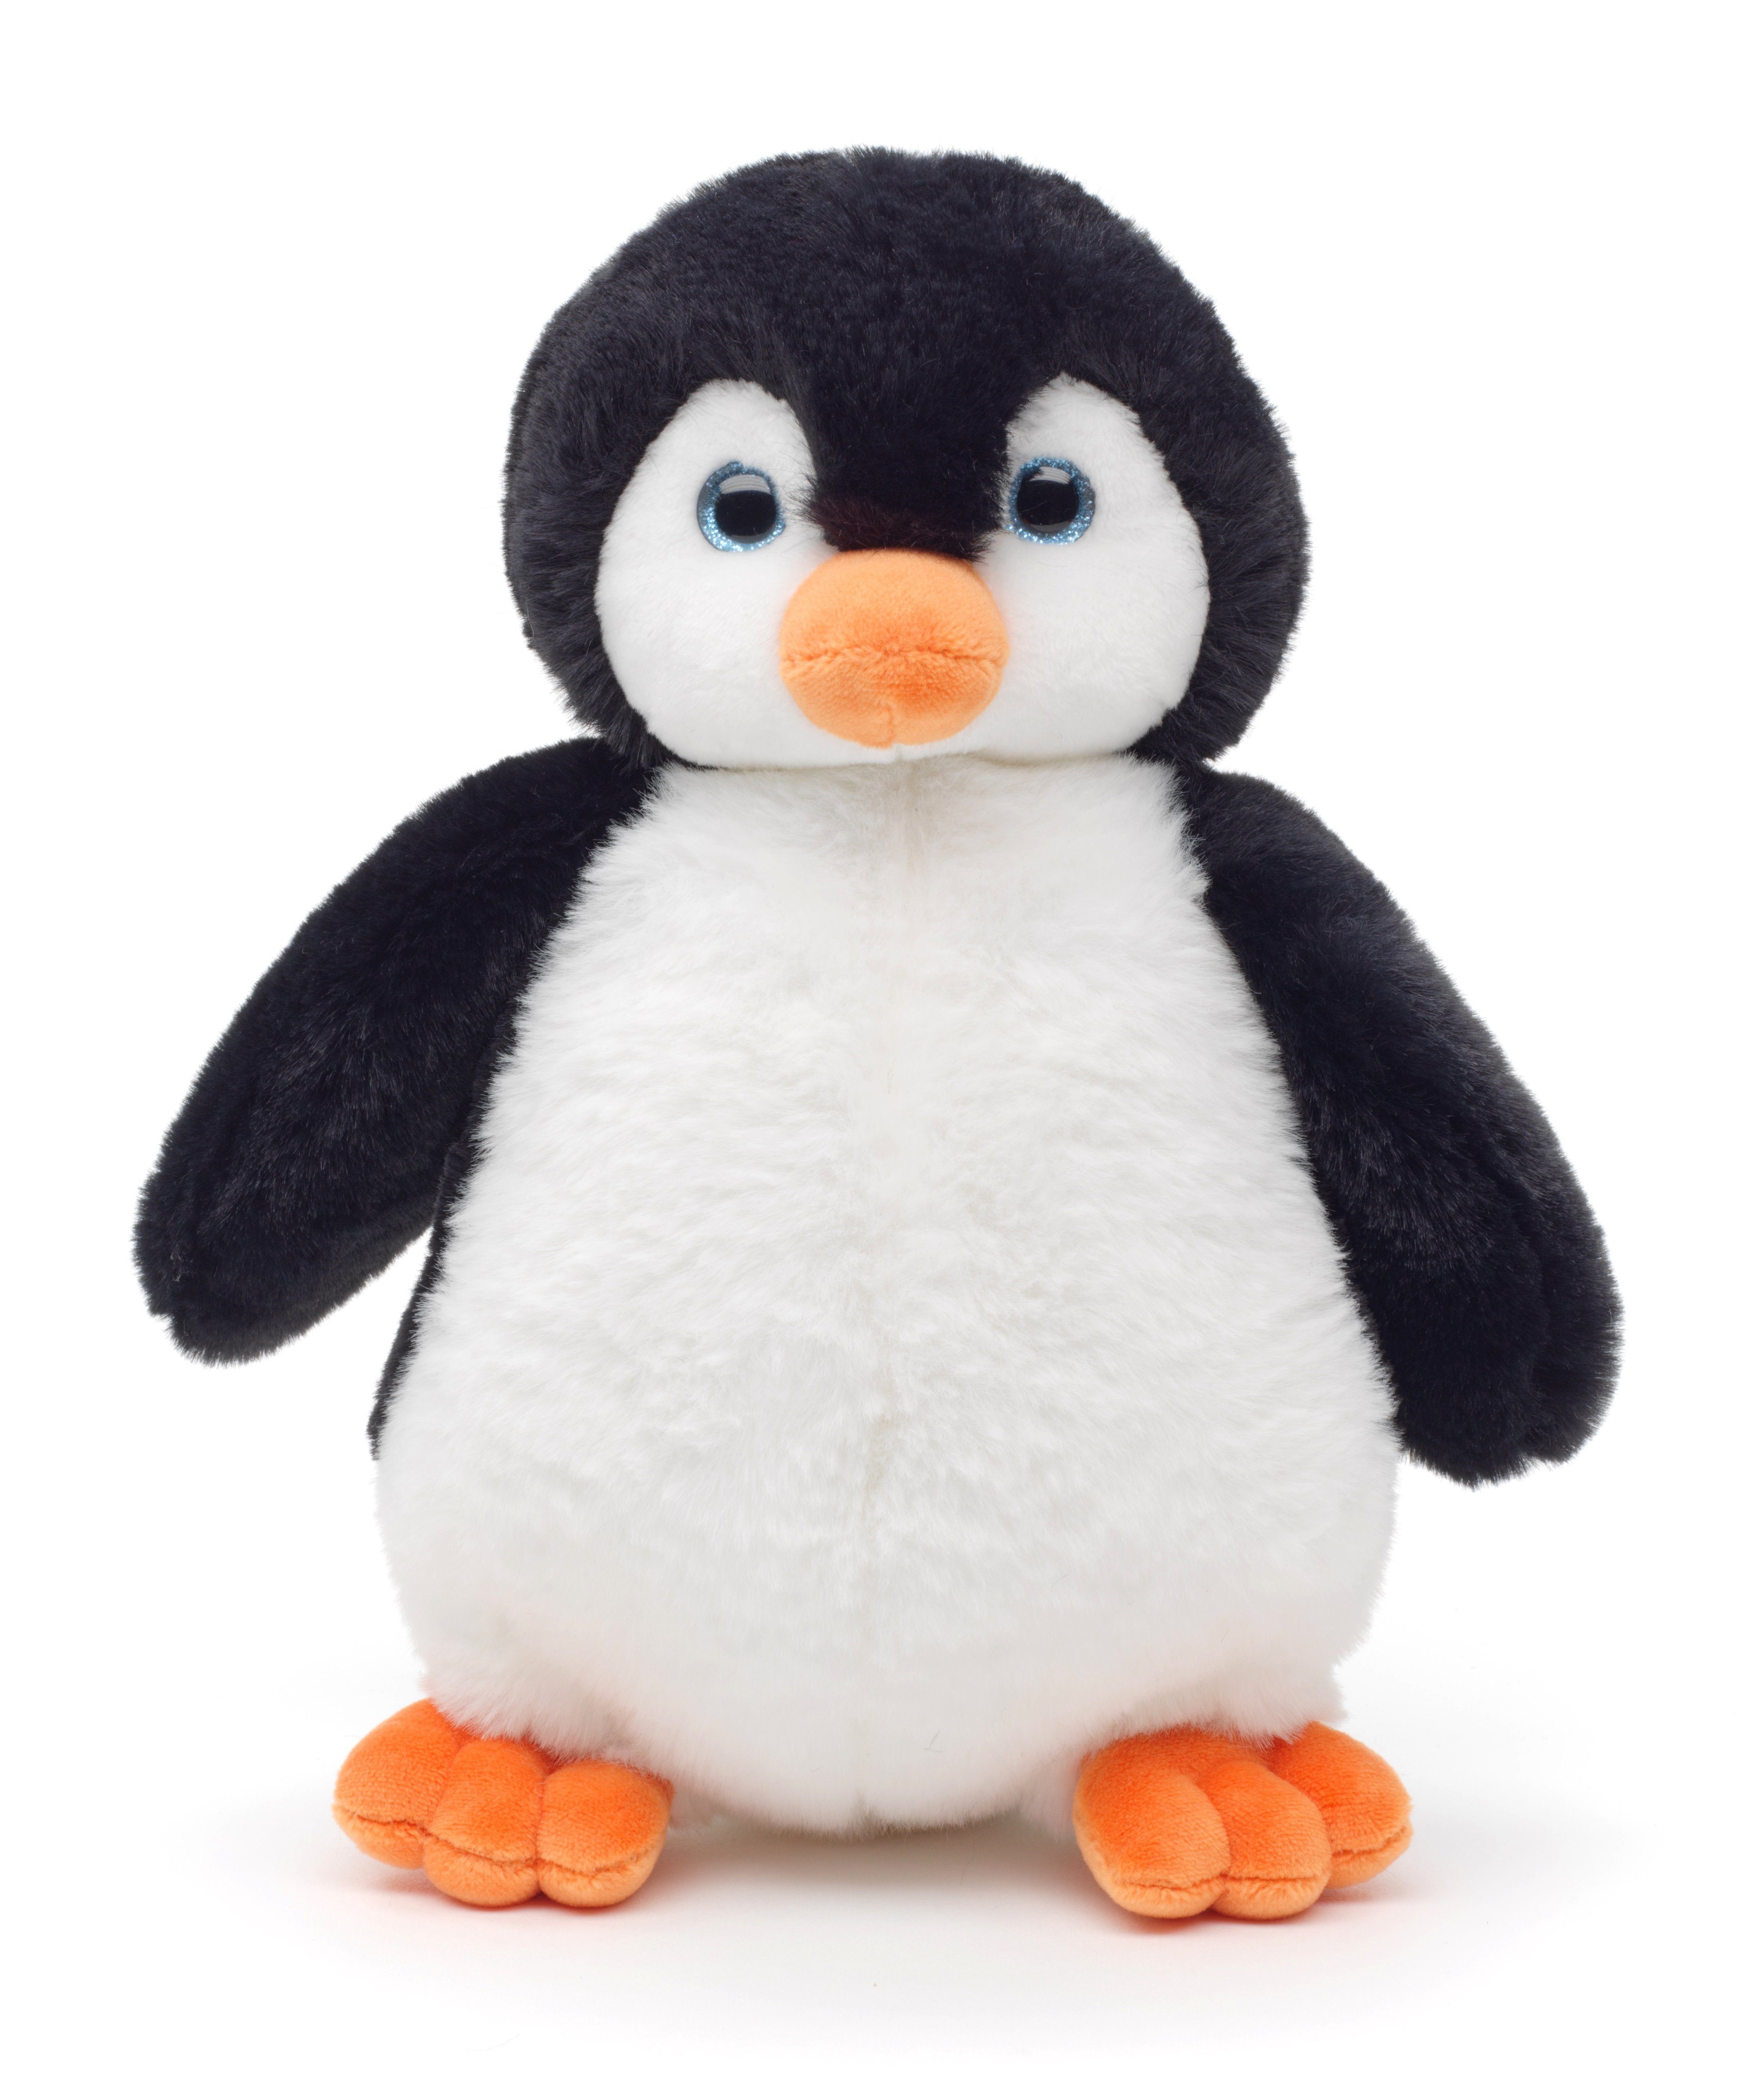 Uni-Toys Kuscheltier Pinguin m.Glitzeraugen - superweich - 22 cm -  Plüsch-Vogel, Plüschtier, zu 100 % recyceltes Füllmaterial